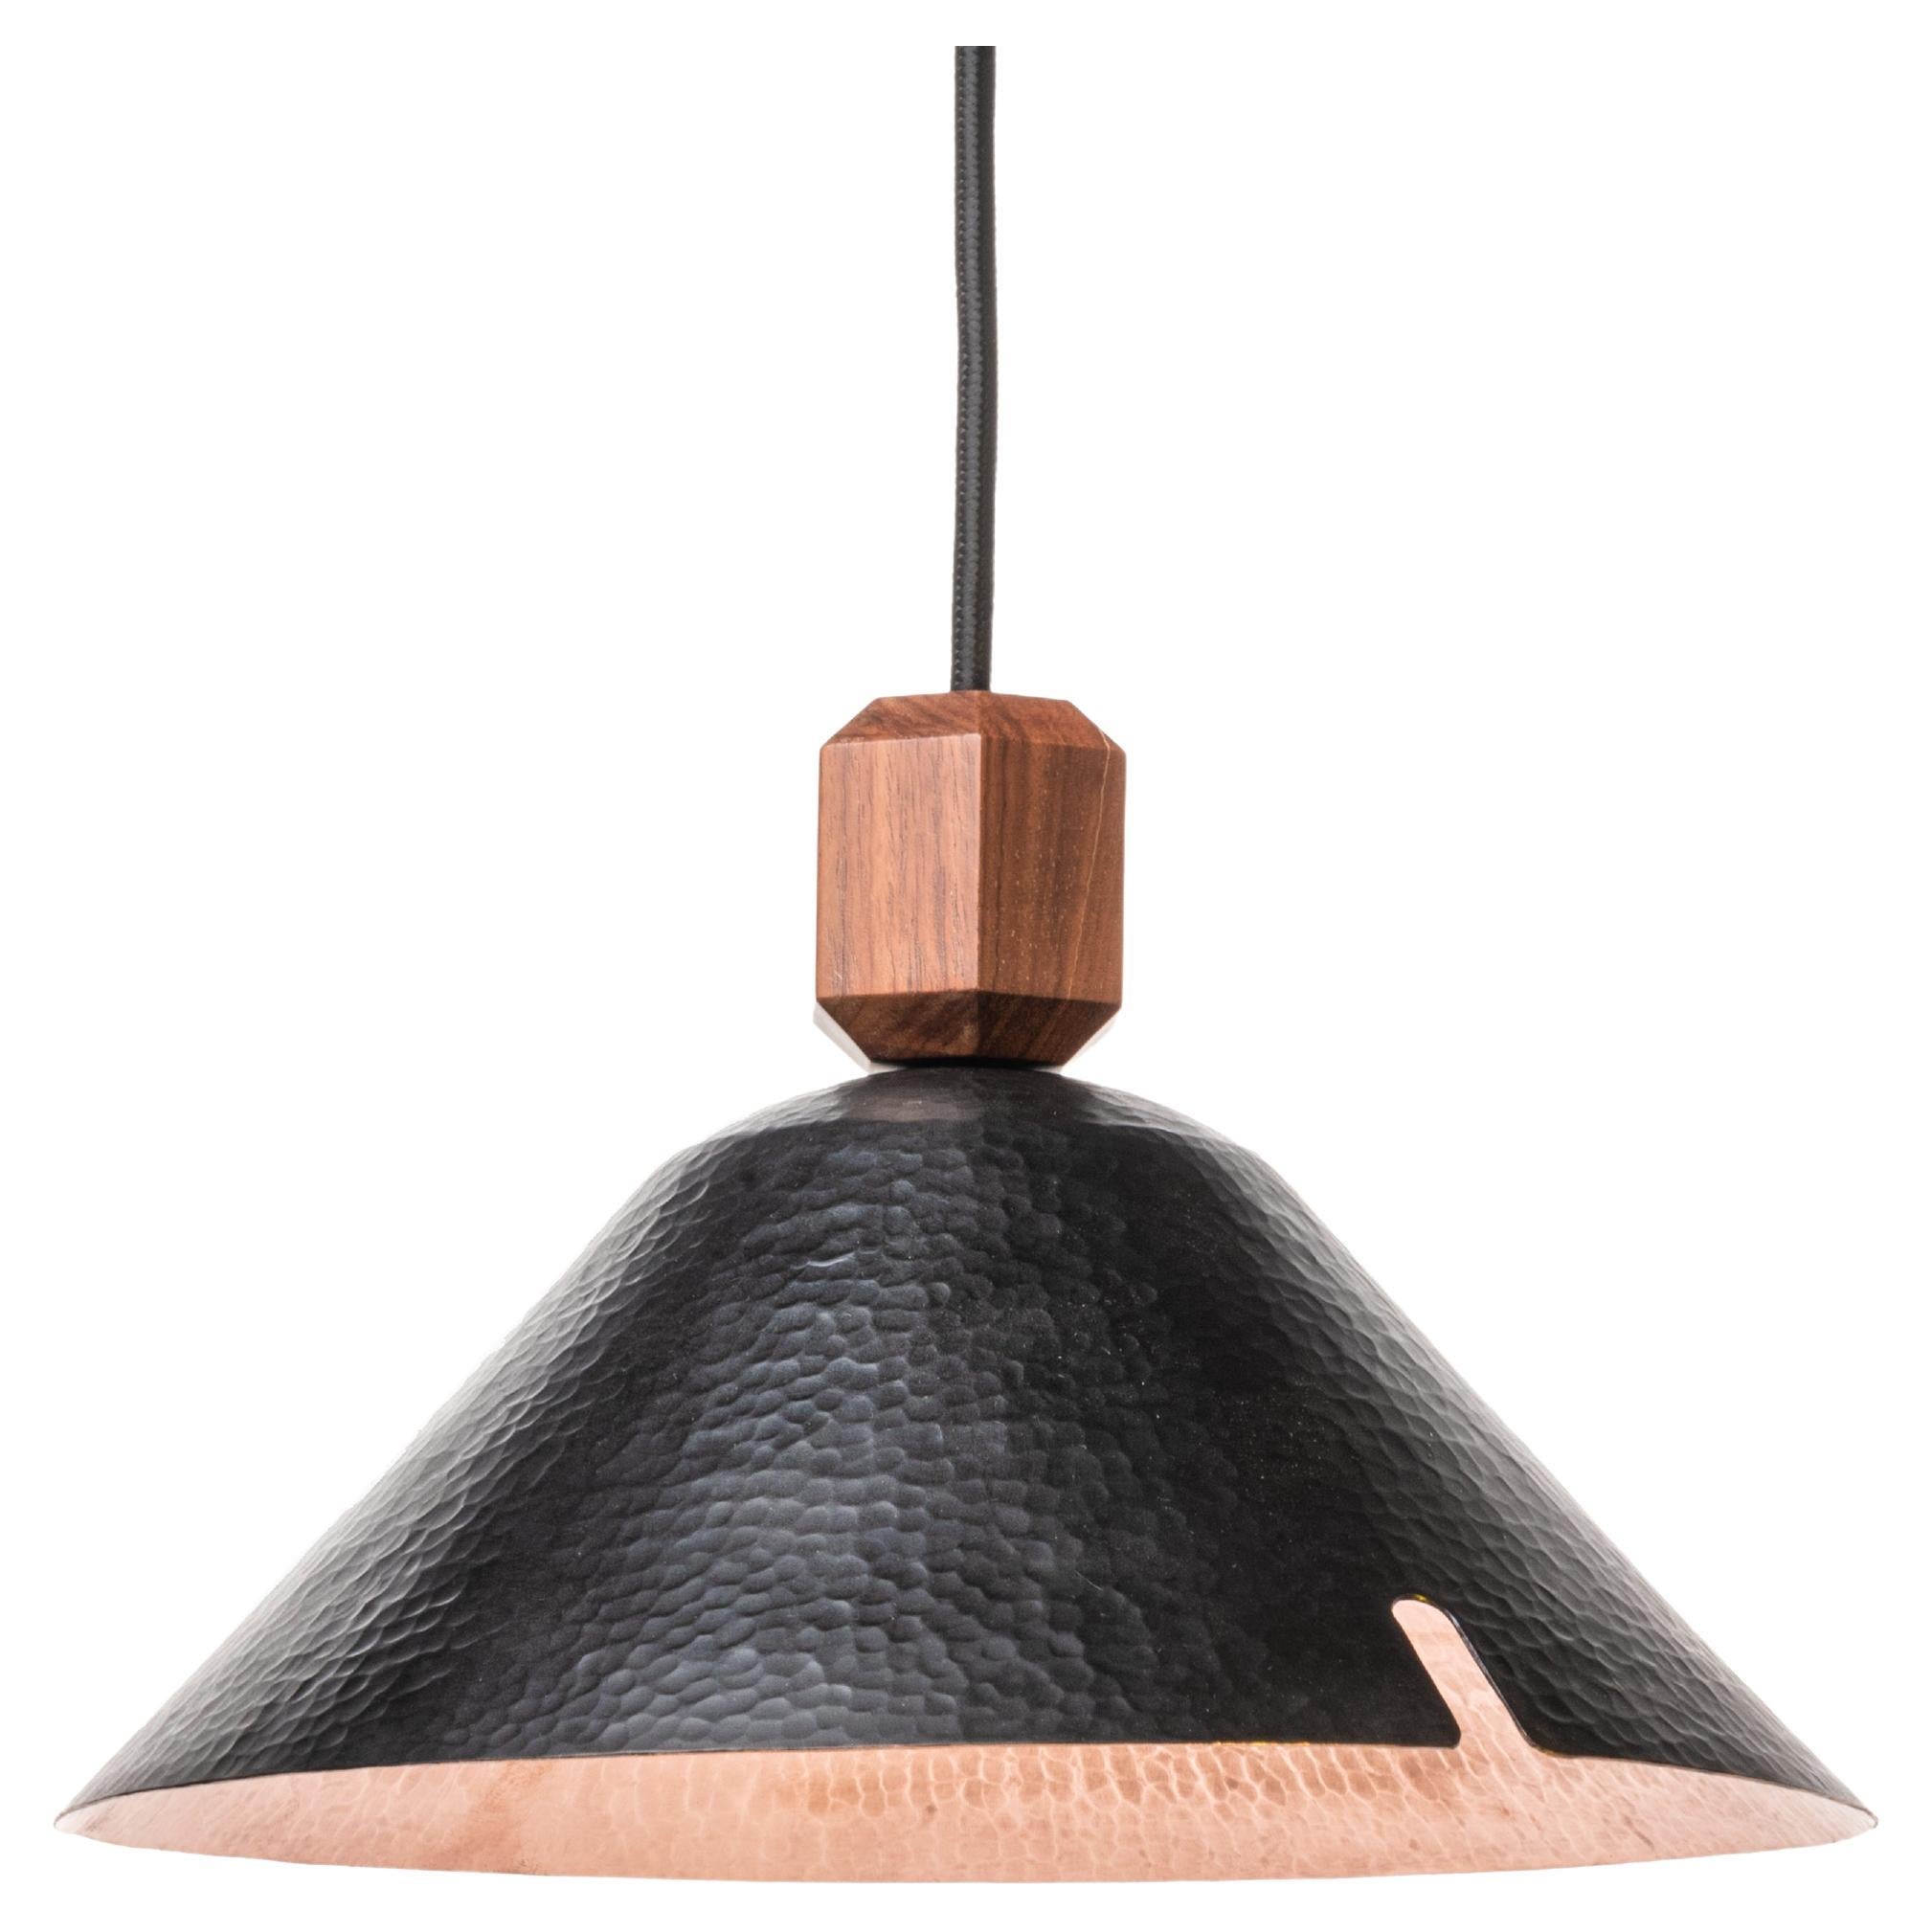 Hammered Copper Pendant Lamp Model V